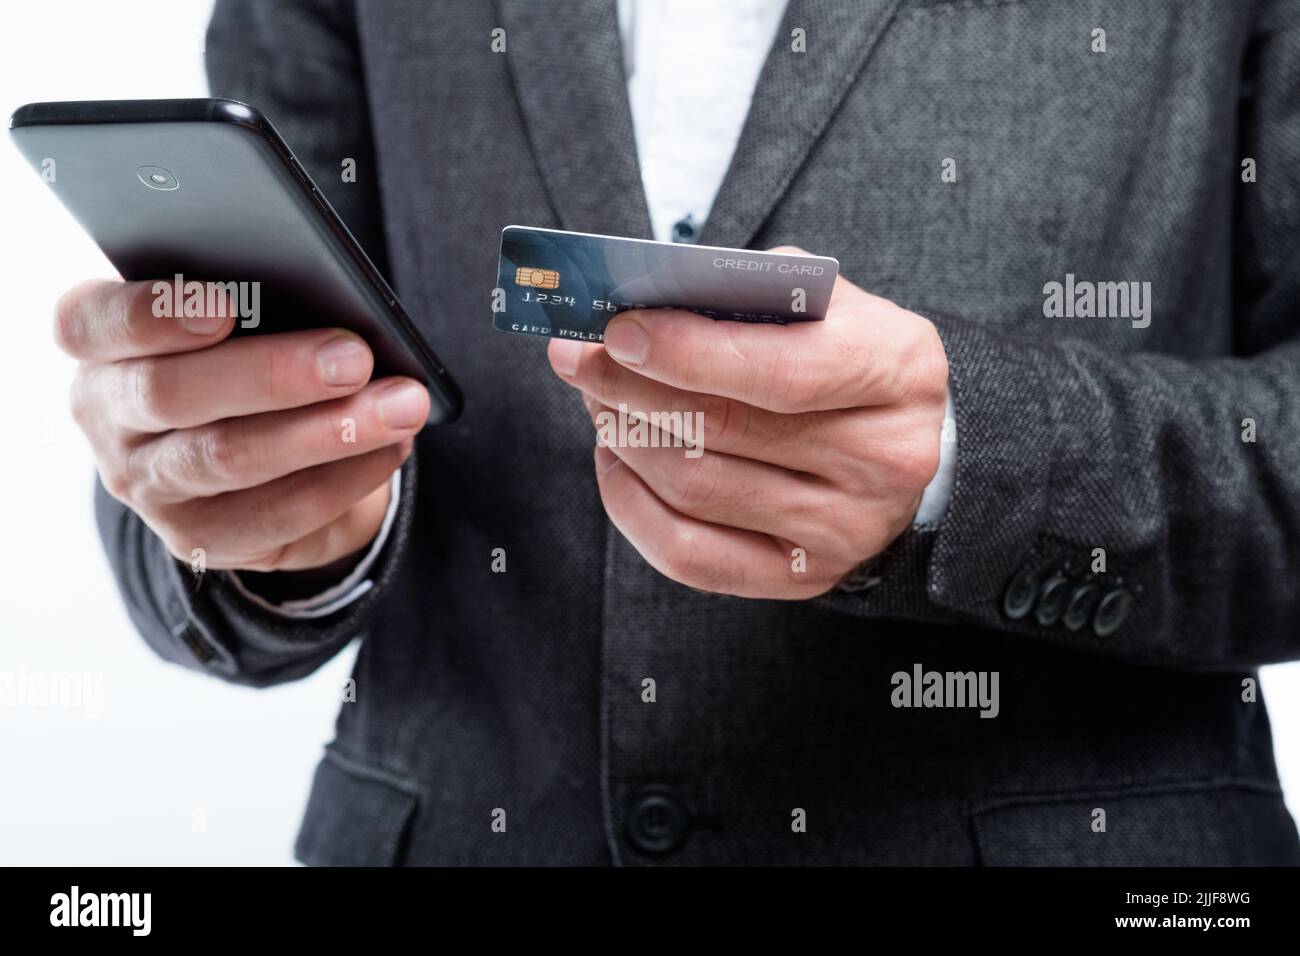 portefeuille mobile nfc application de paiement numérique carte téléphone Banque D'Images